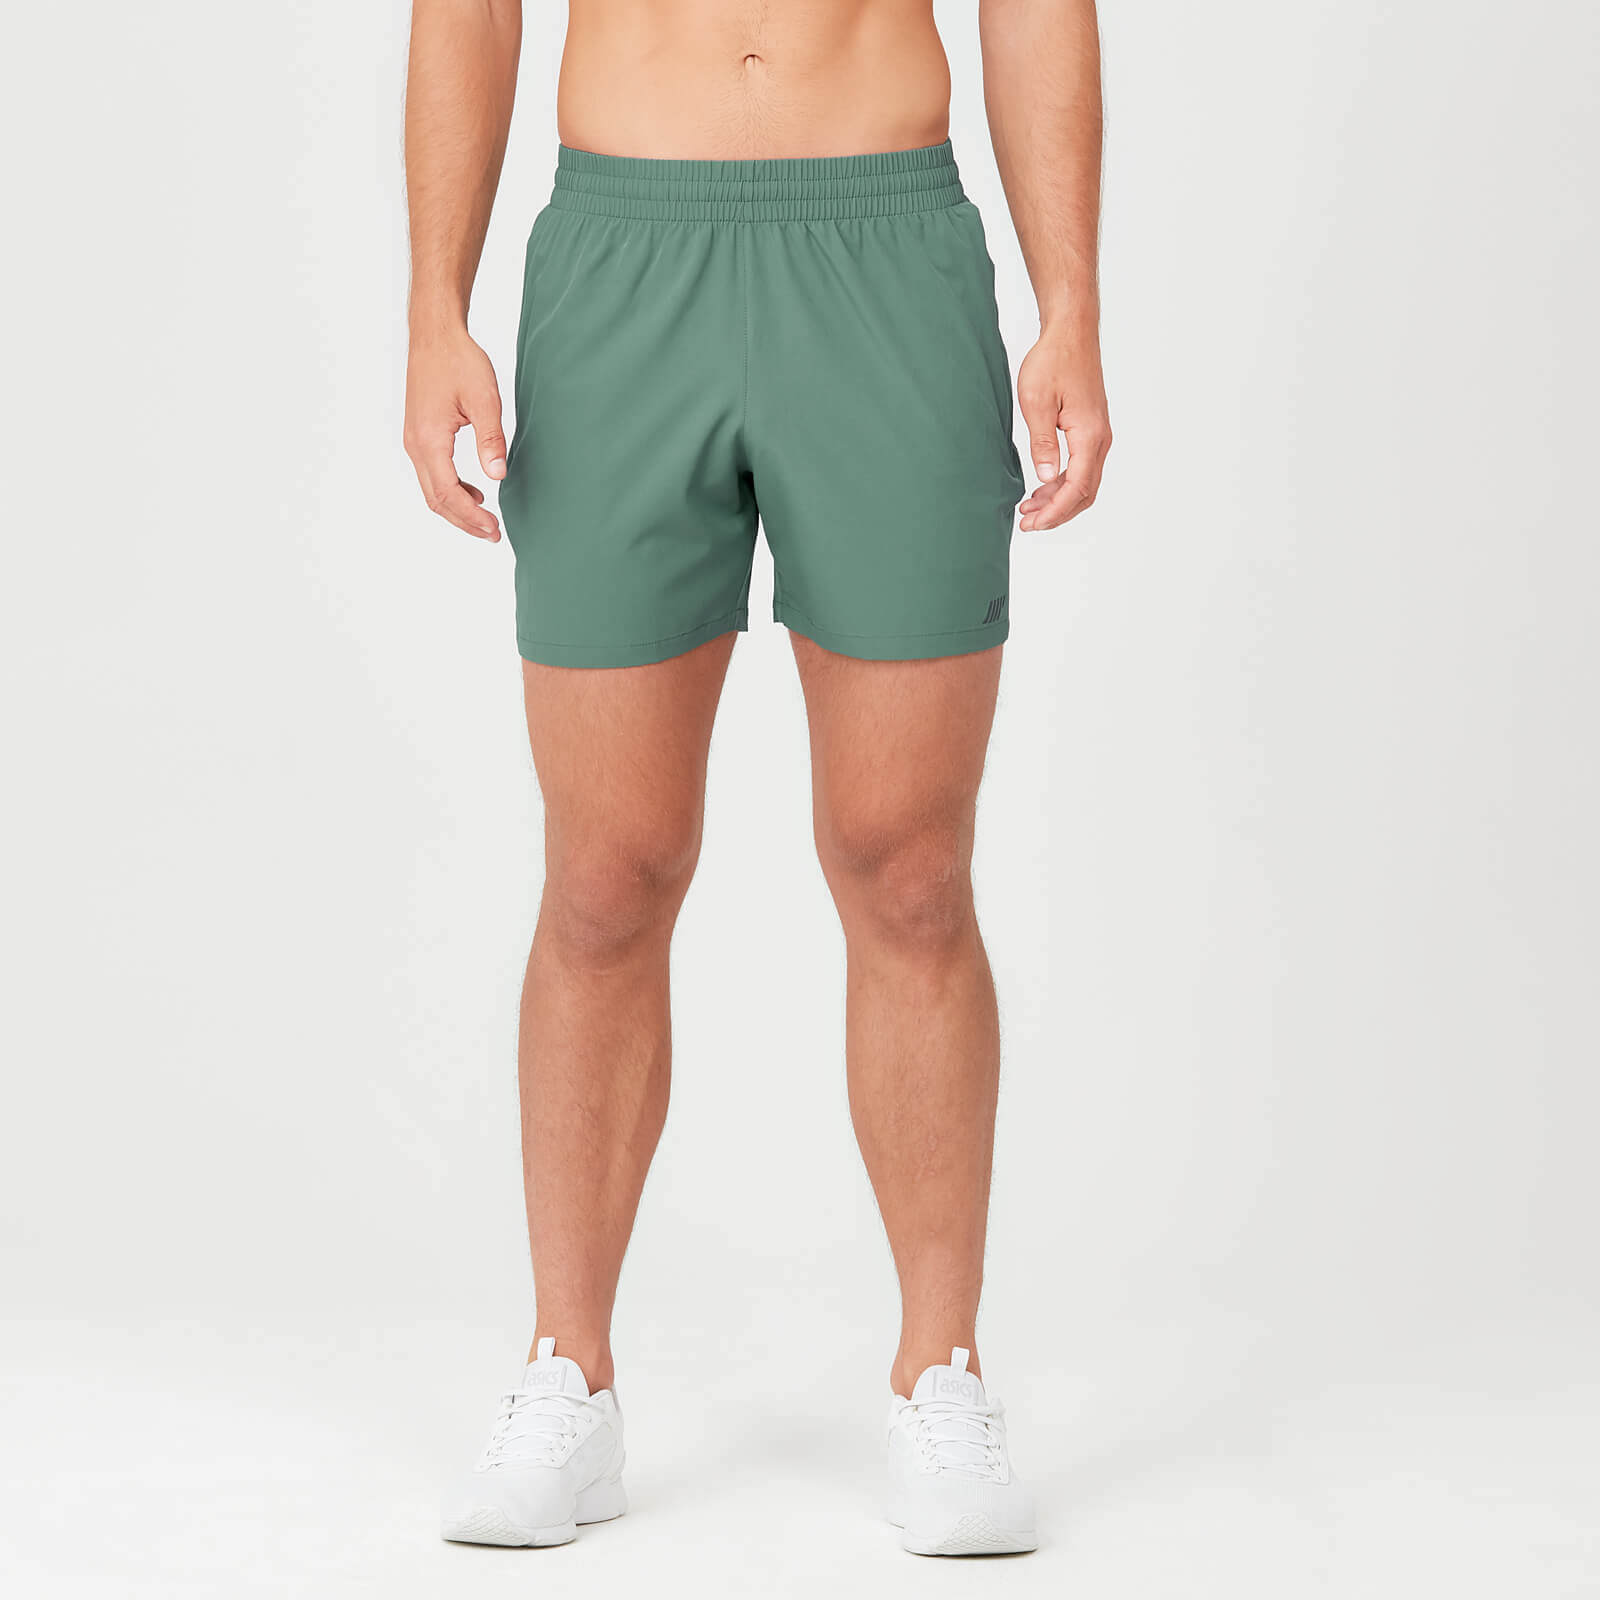 男士短跑短褲 - 綠色